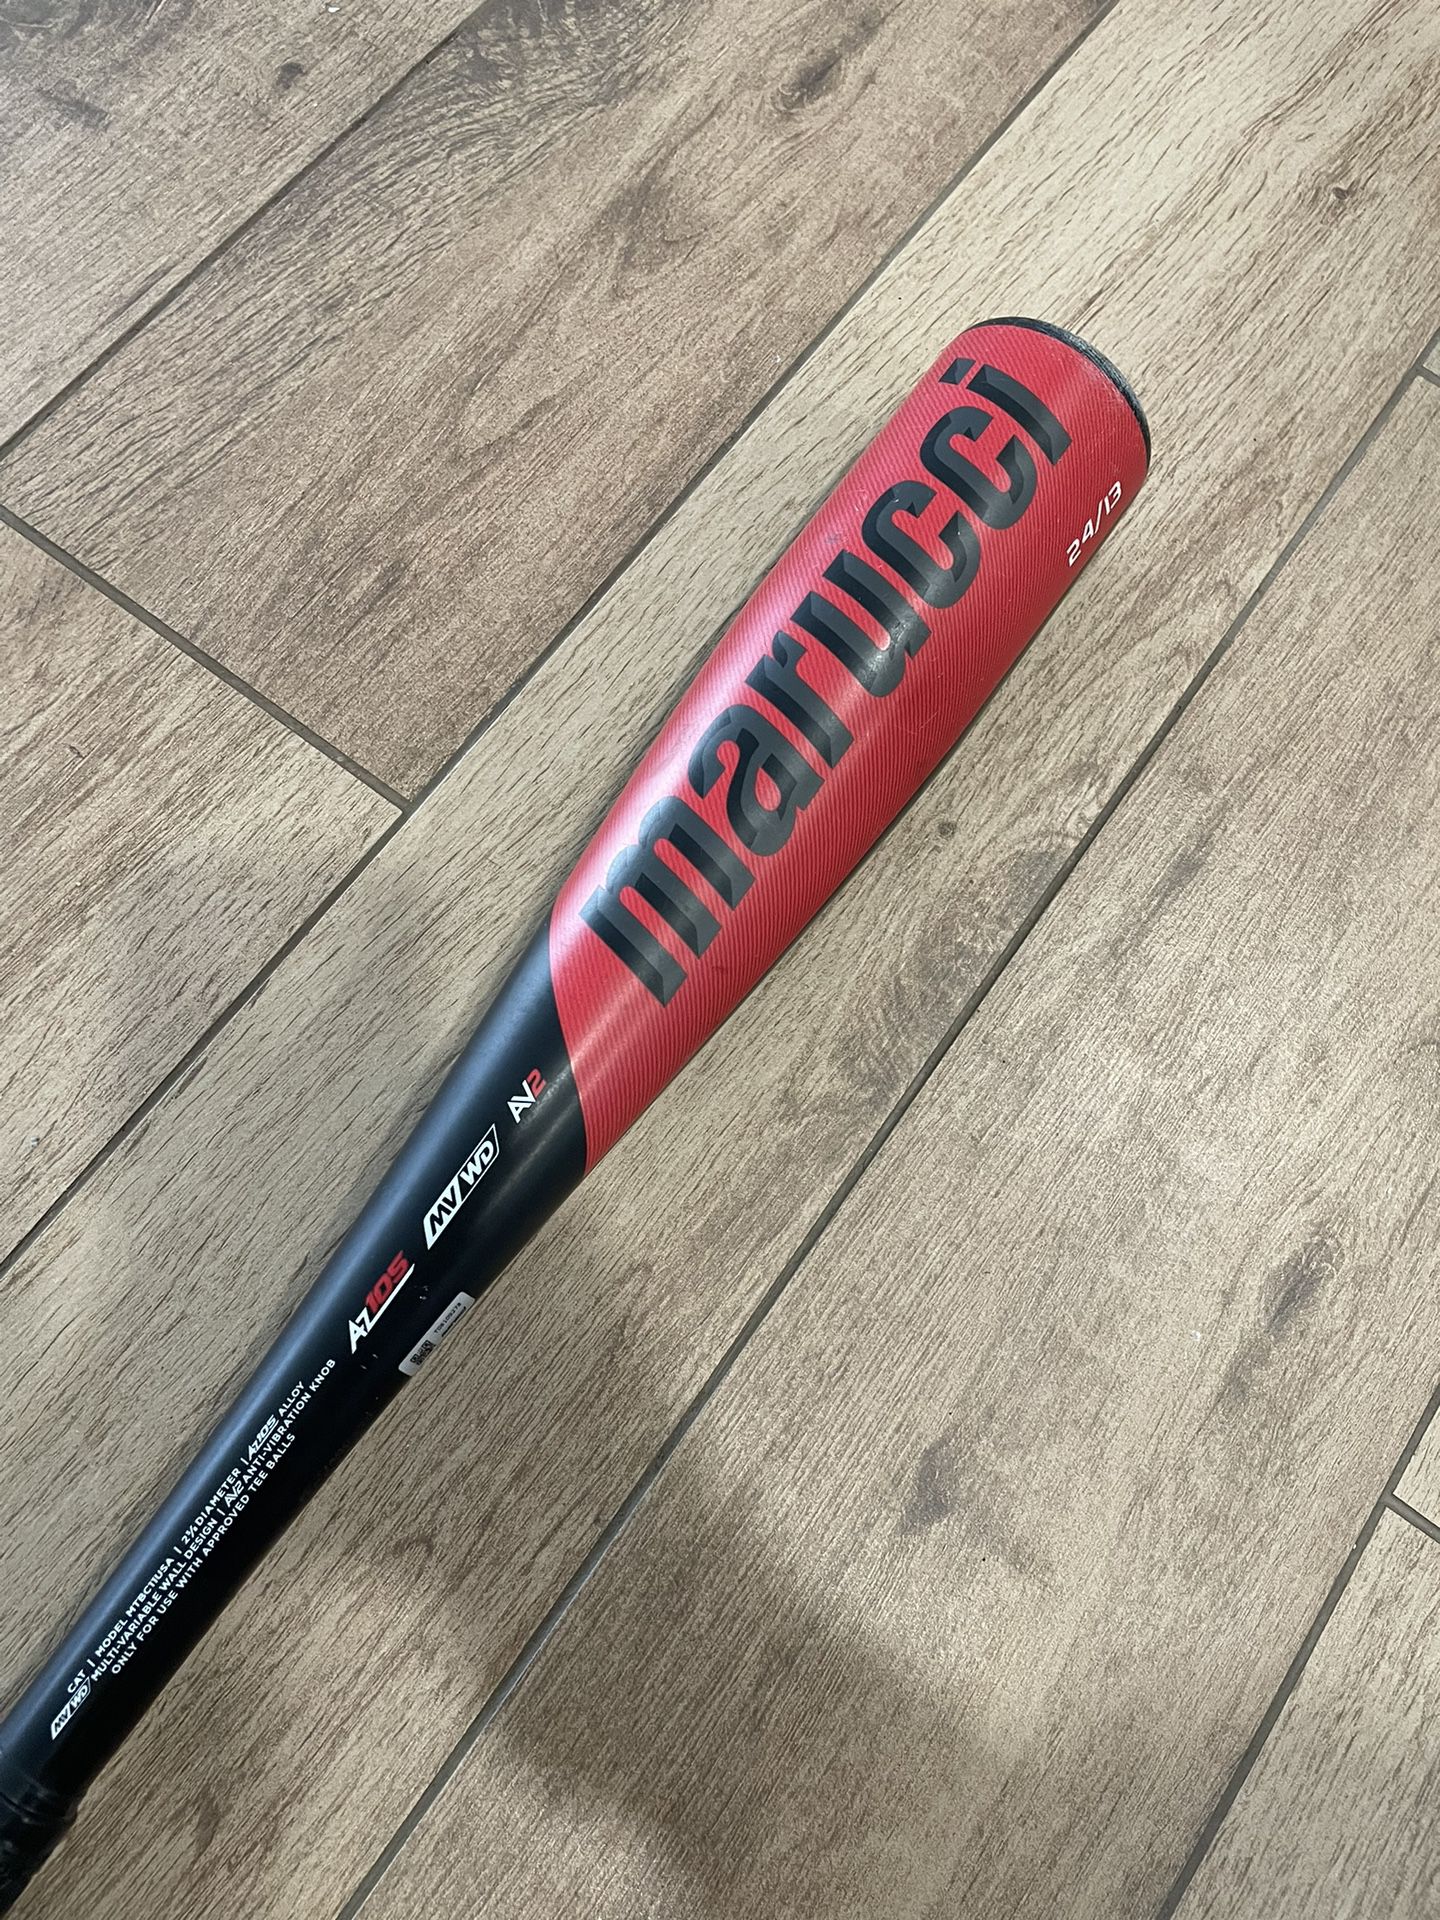 24” Marucci T-ball / baseball Bat